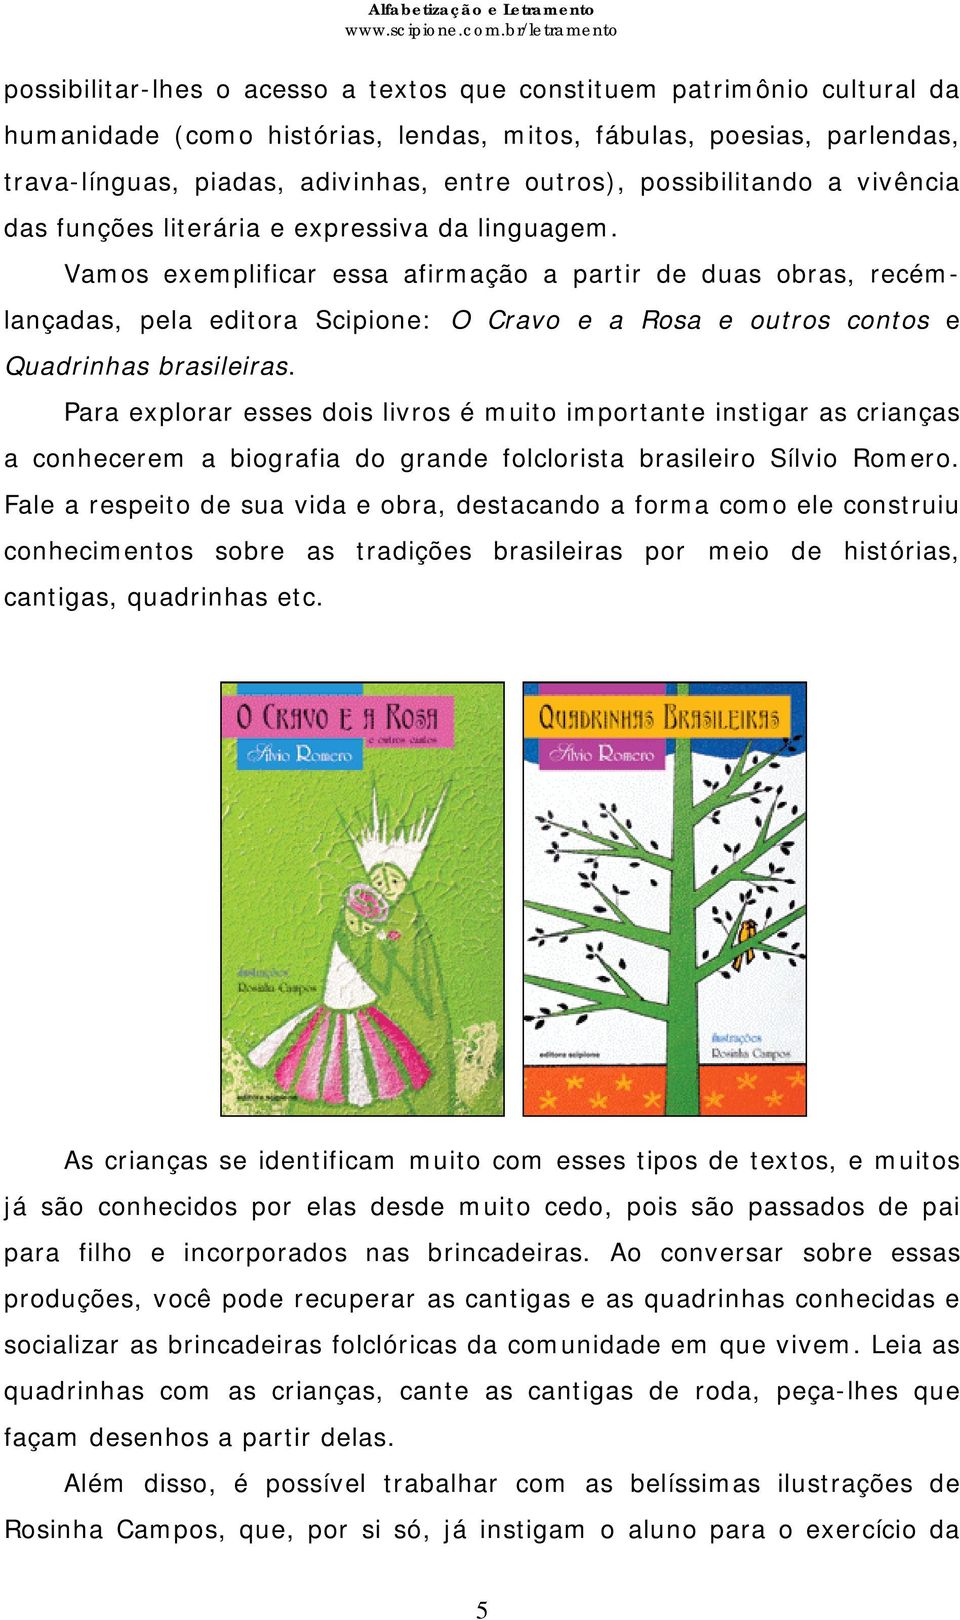 Vamos exemplificar essa afirmação a partir de duas obras, recémlançadas, pela editora Scipione: O Cravo e a Rosa e outros contos e Quadrinhas brasileiras.